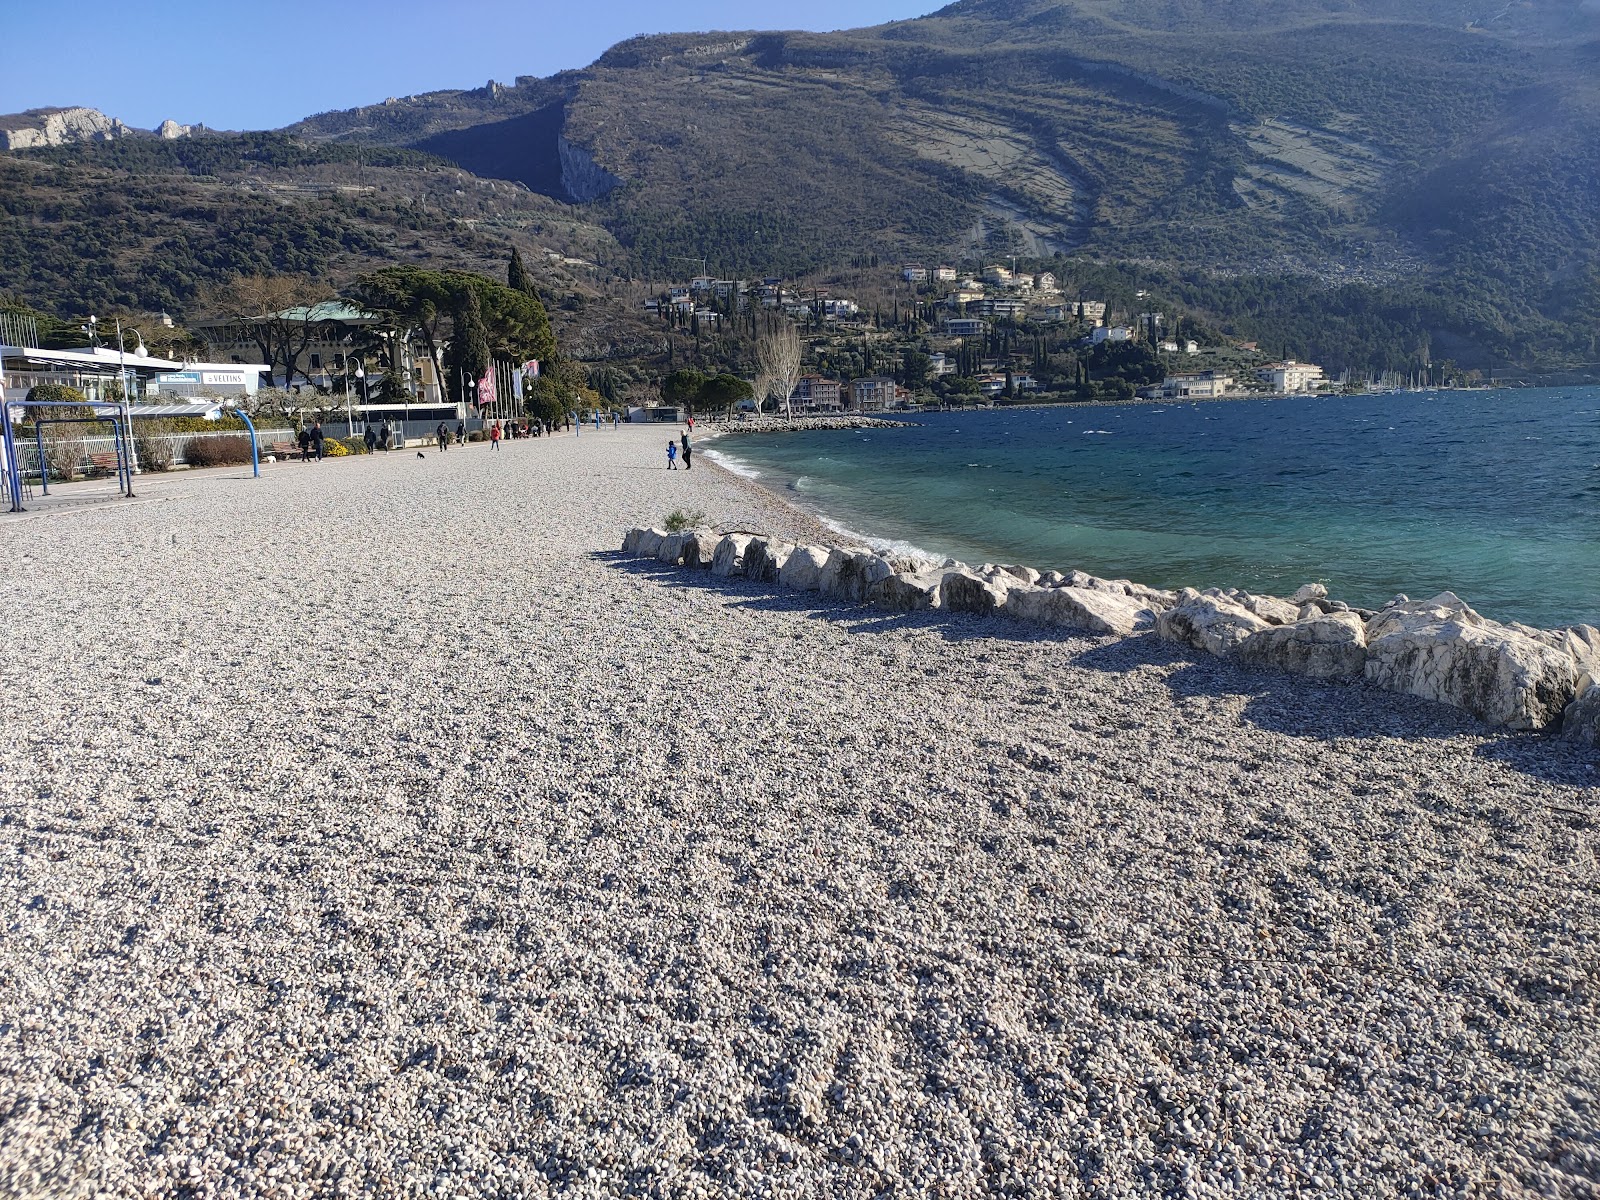 Foto af Spiaggia Lungolago og dens smukke landskab